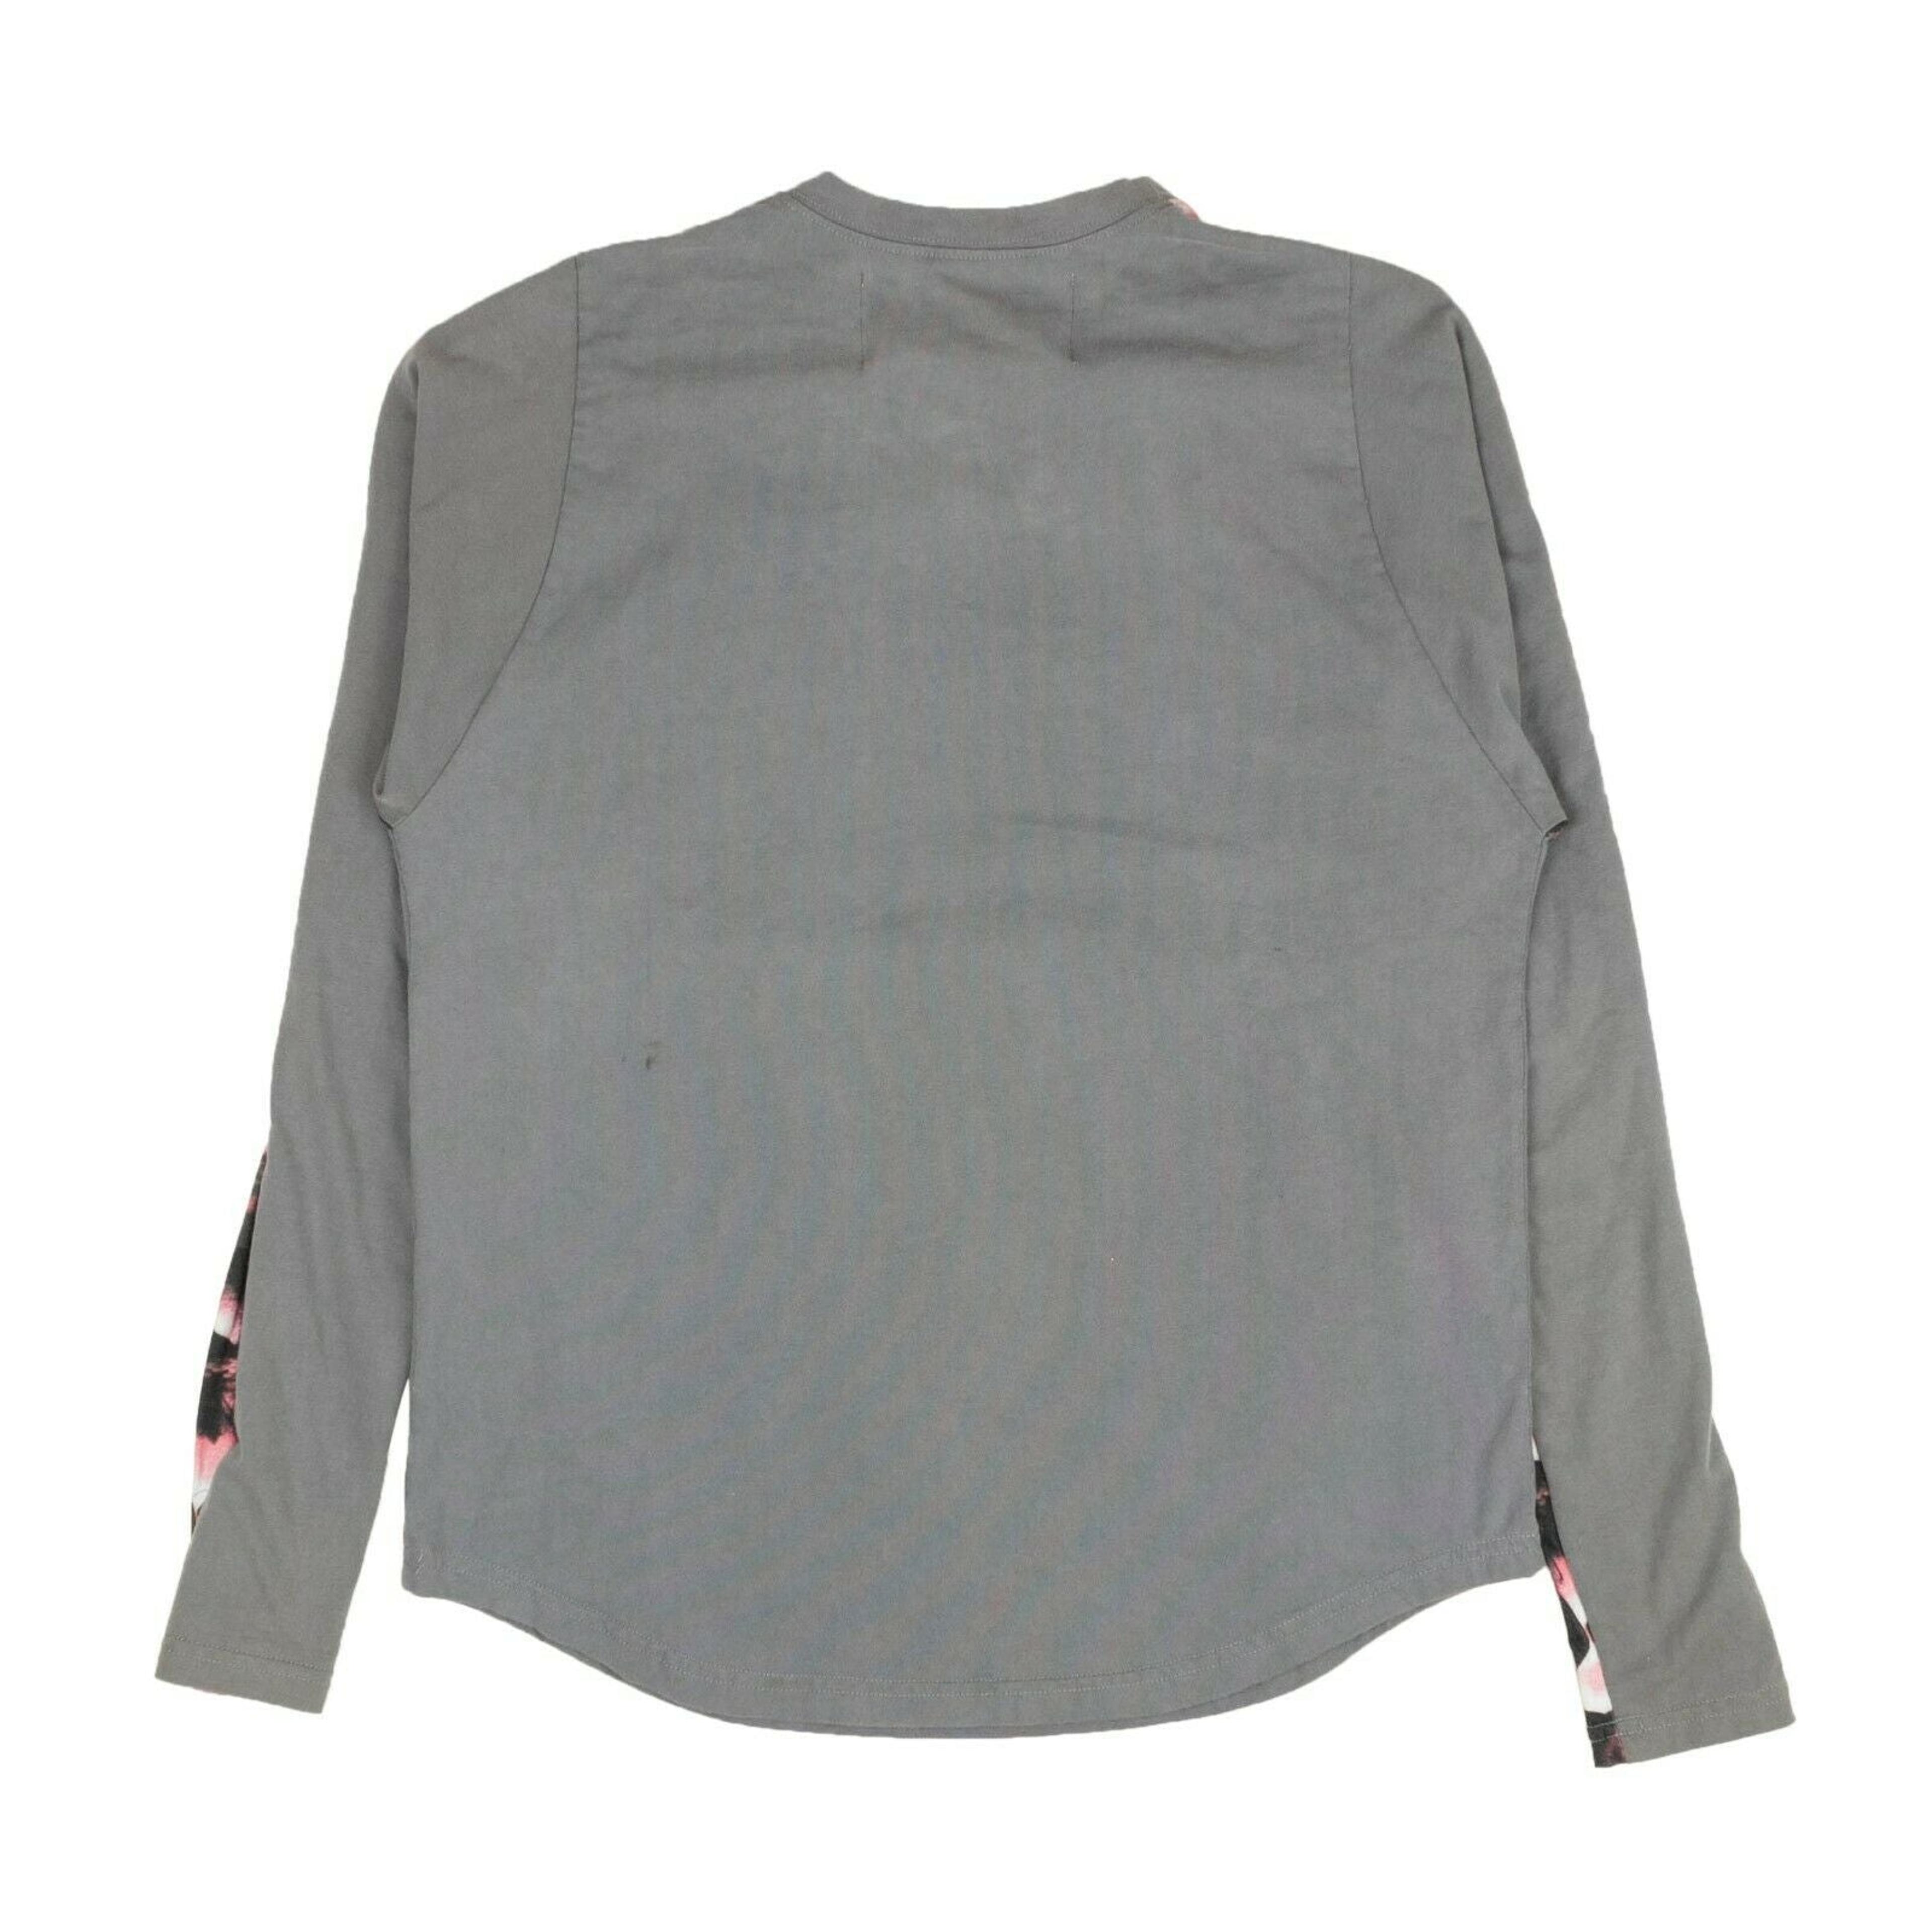 Alternate View 1 of Sp5Der Long Sleeve T-Shirt - Gray